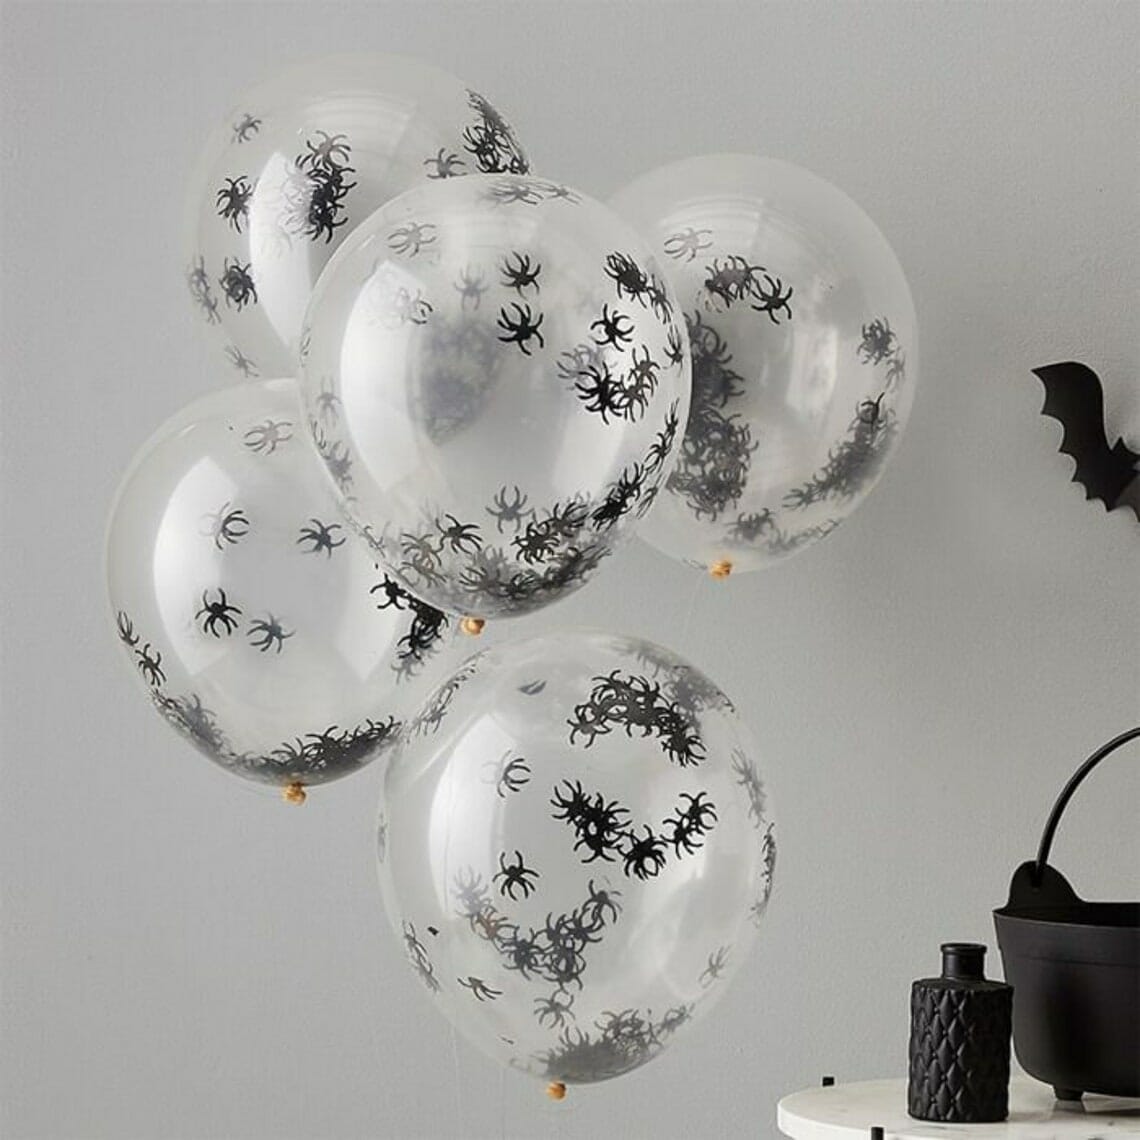 spider confetti balloons